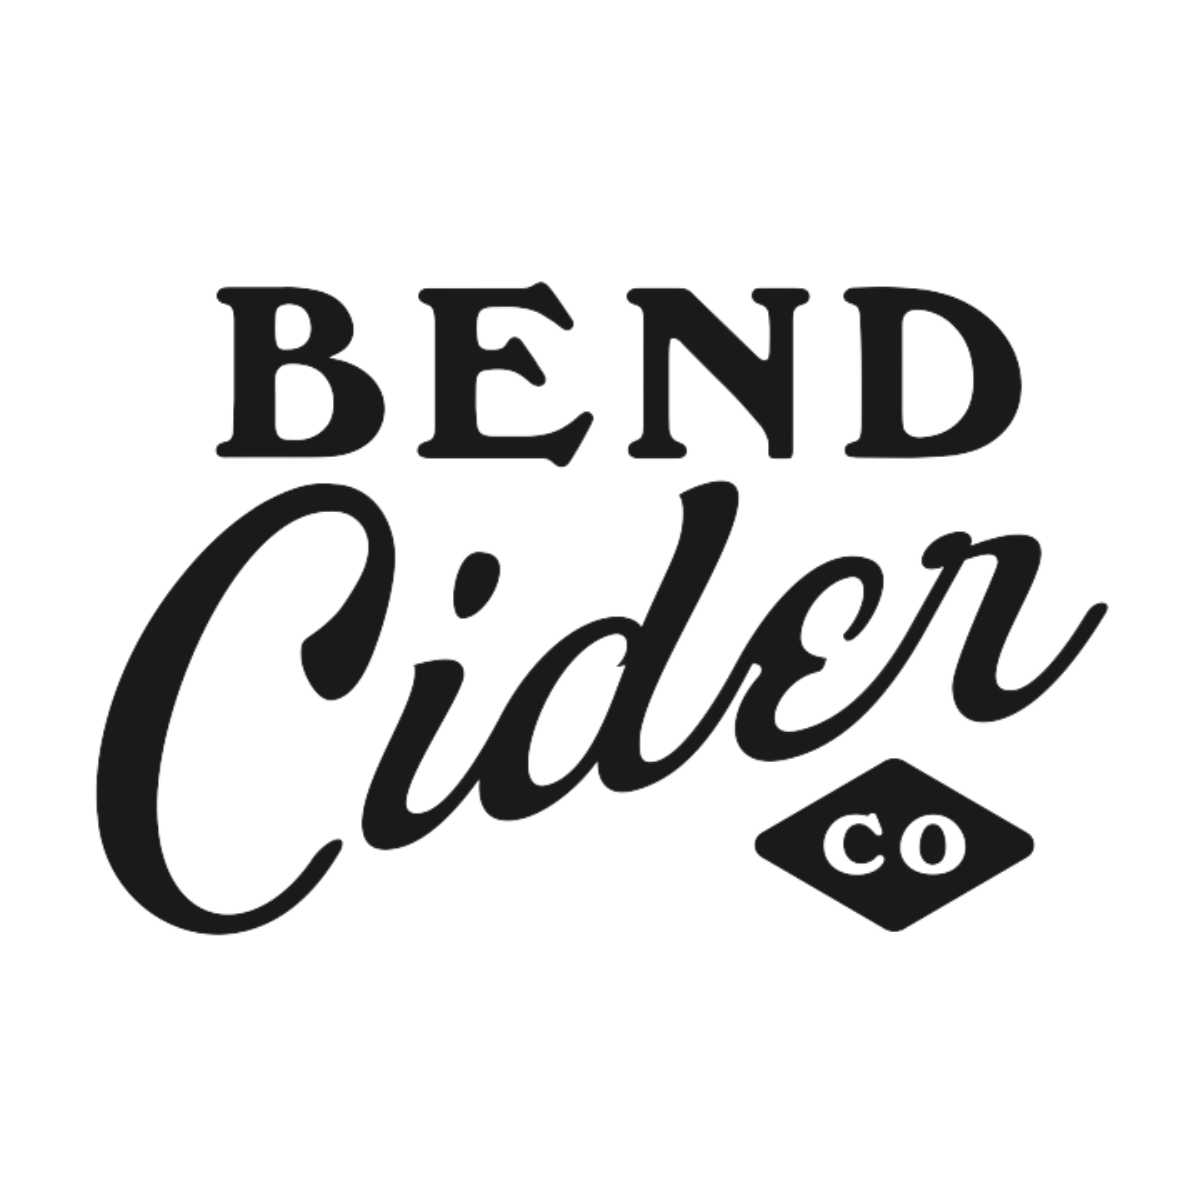 Bend Cider Co logo